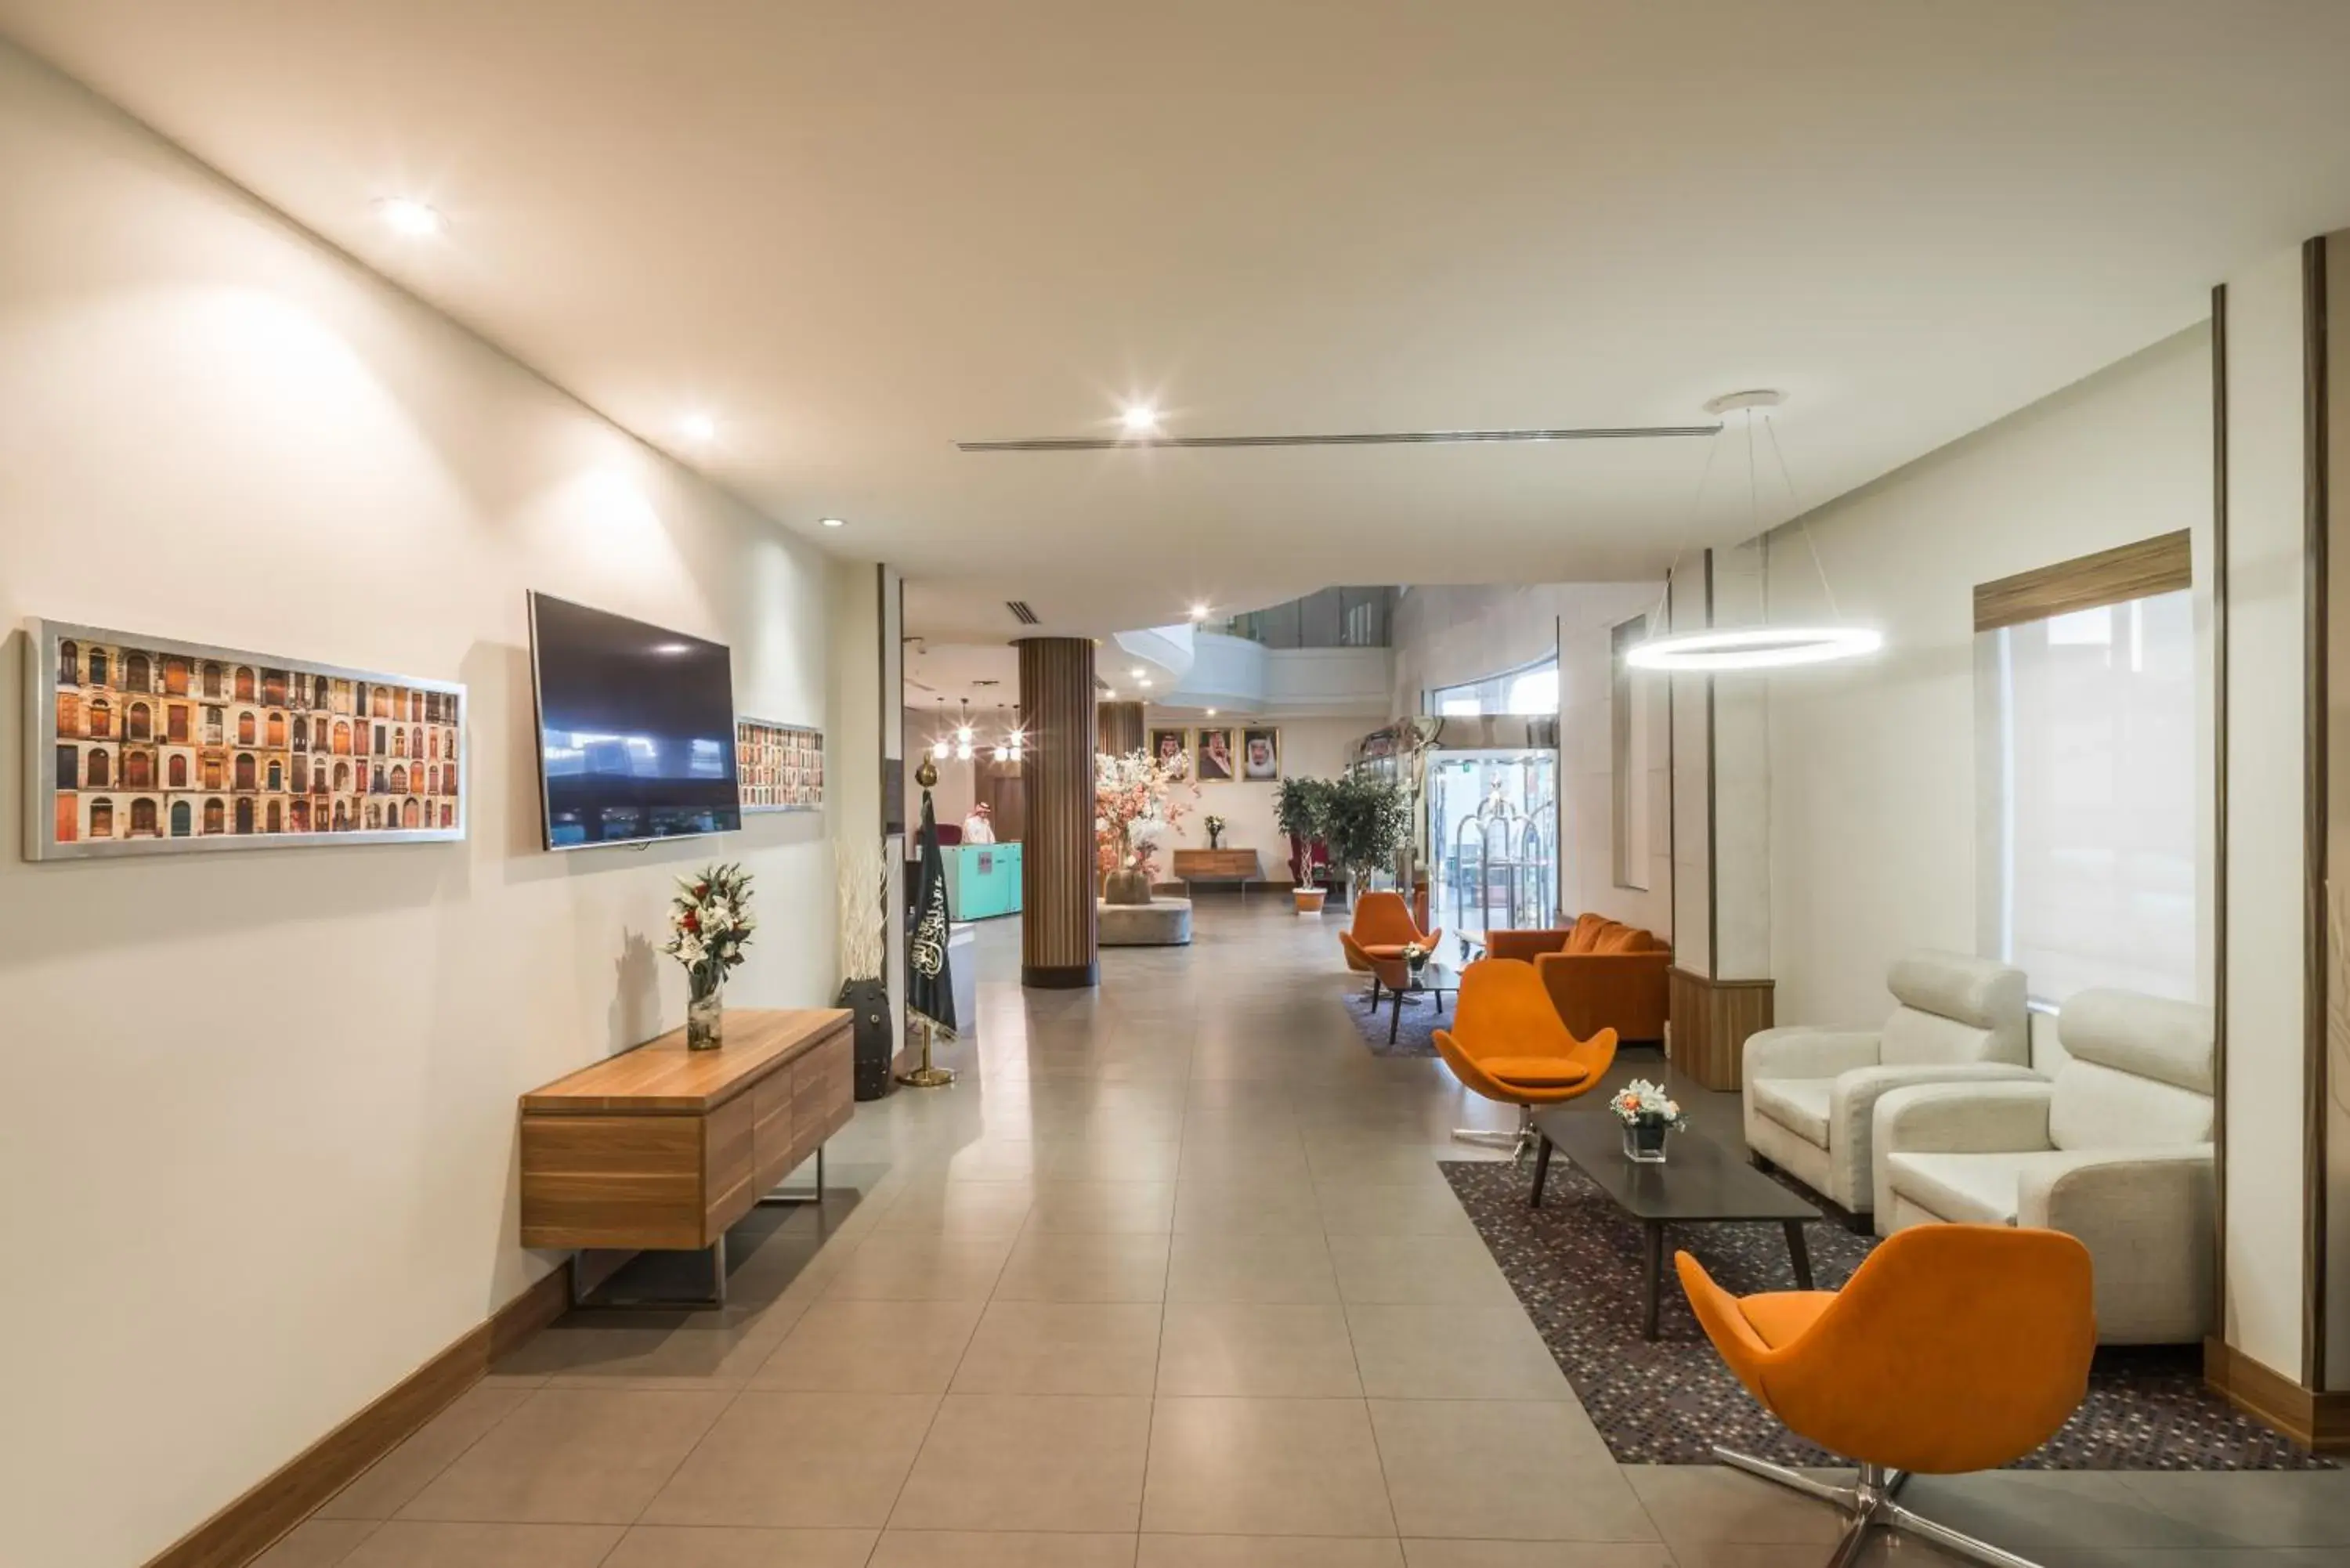 Lobby or reception, Lobby/Reception in Mena Hotel Tabuk